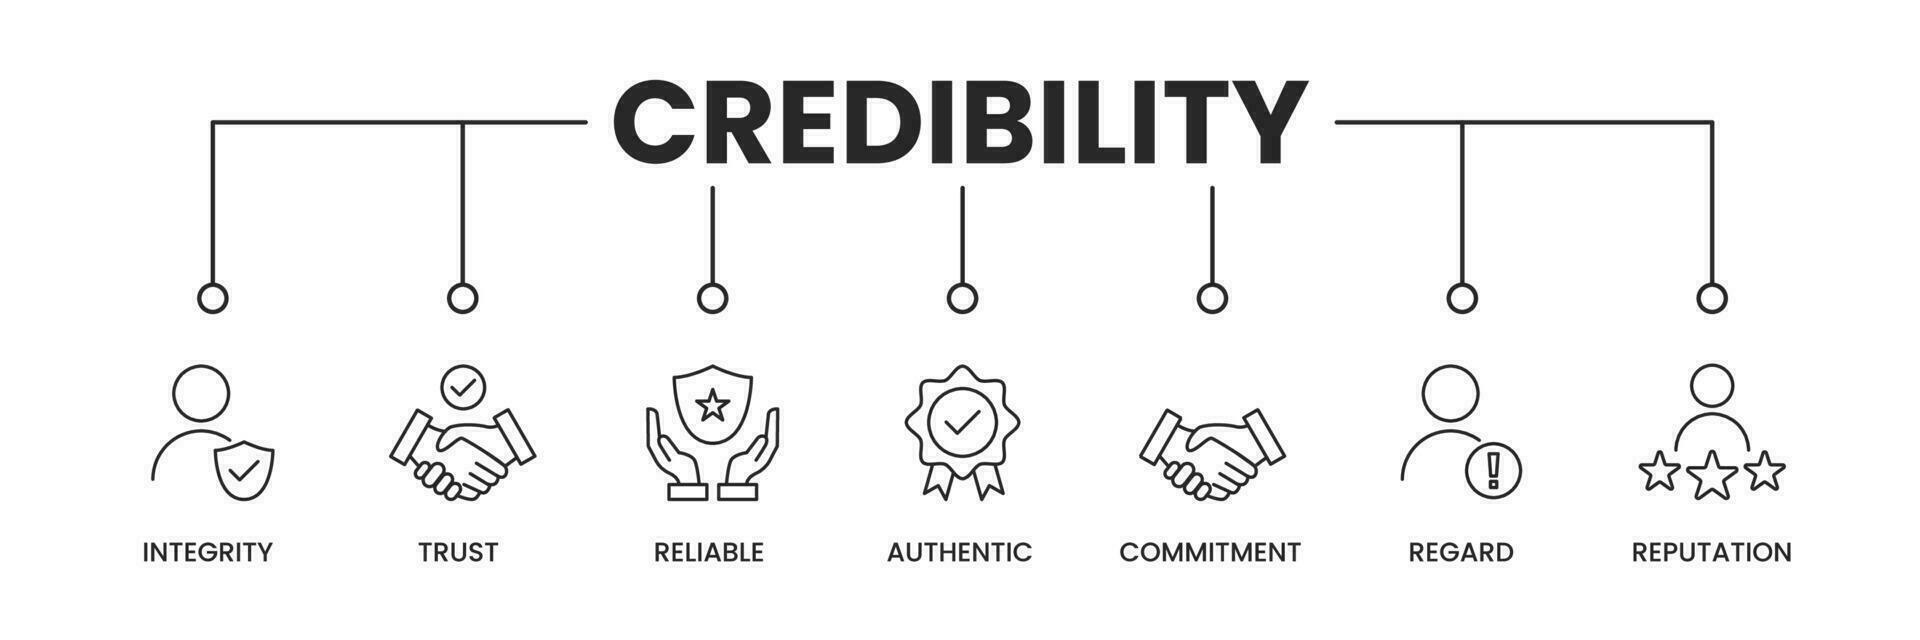 credibilità icone striscione. credibilità bandiera con icone di integrità, fiducia, affidabile, autentico, impegno, considerare e di più. vettore illustrazione.